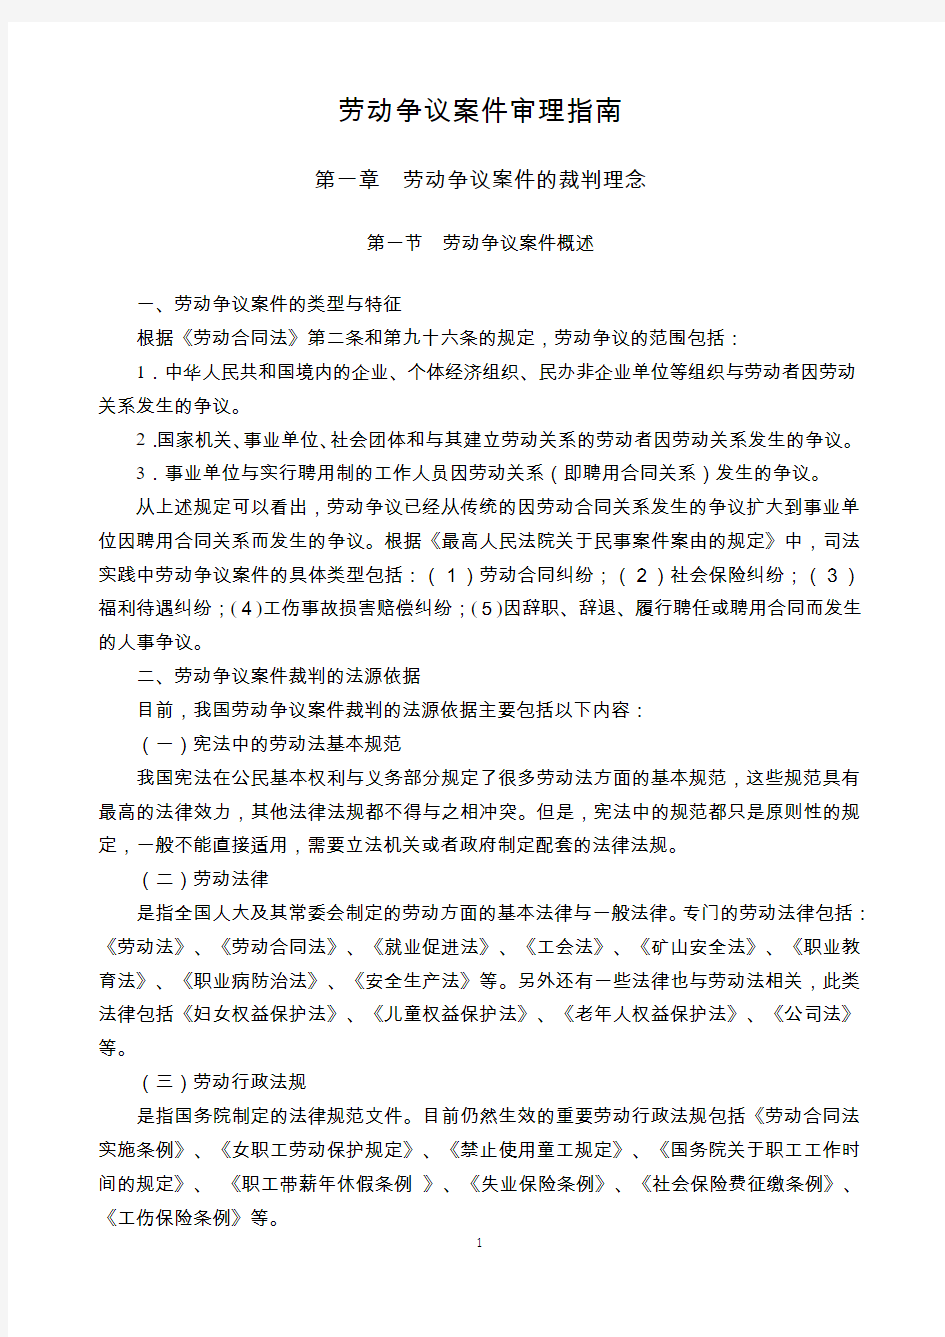 江苏省高级人民法院《劳动争议案件审理指南 》